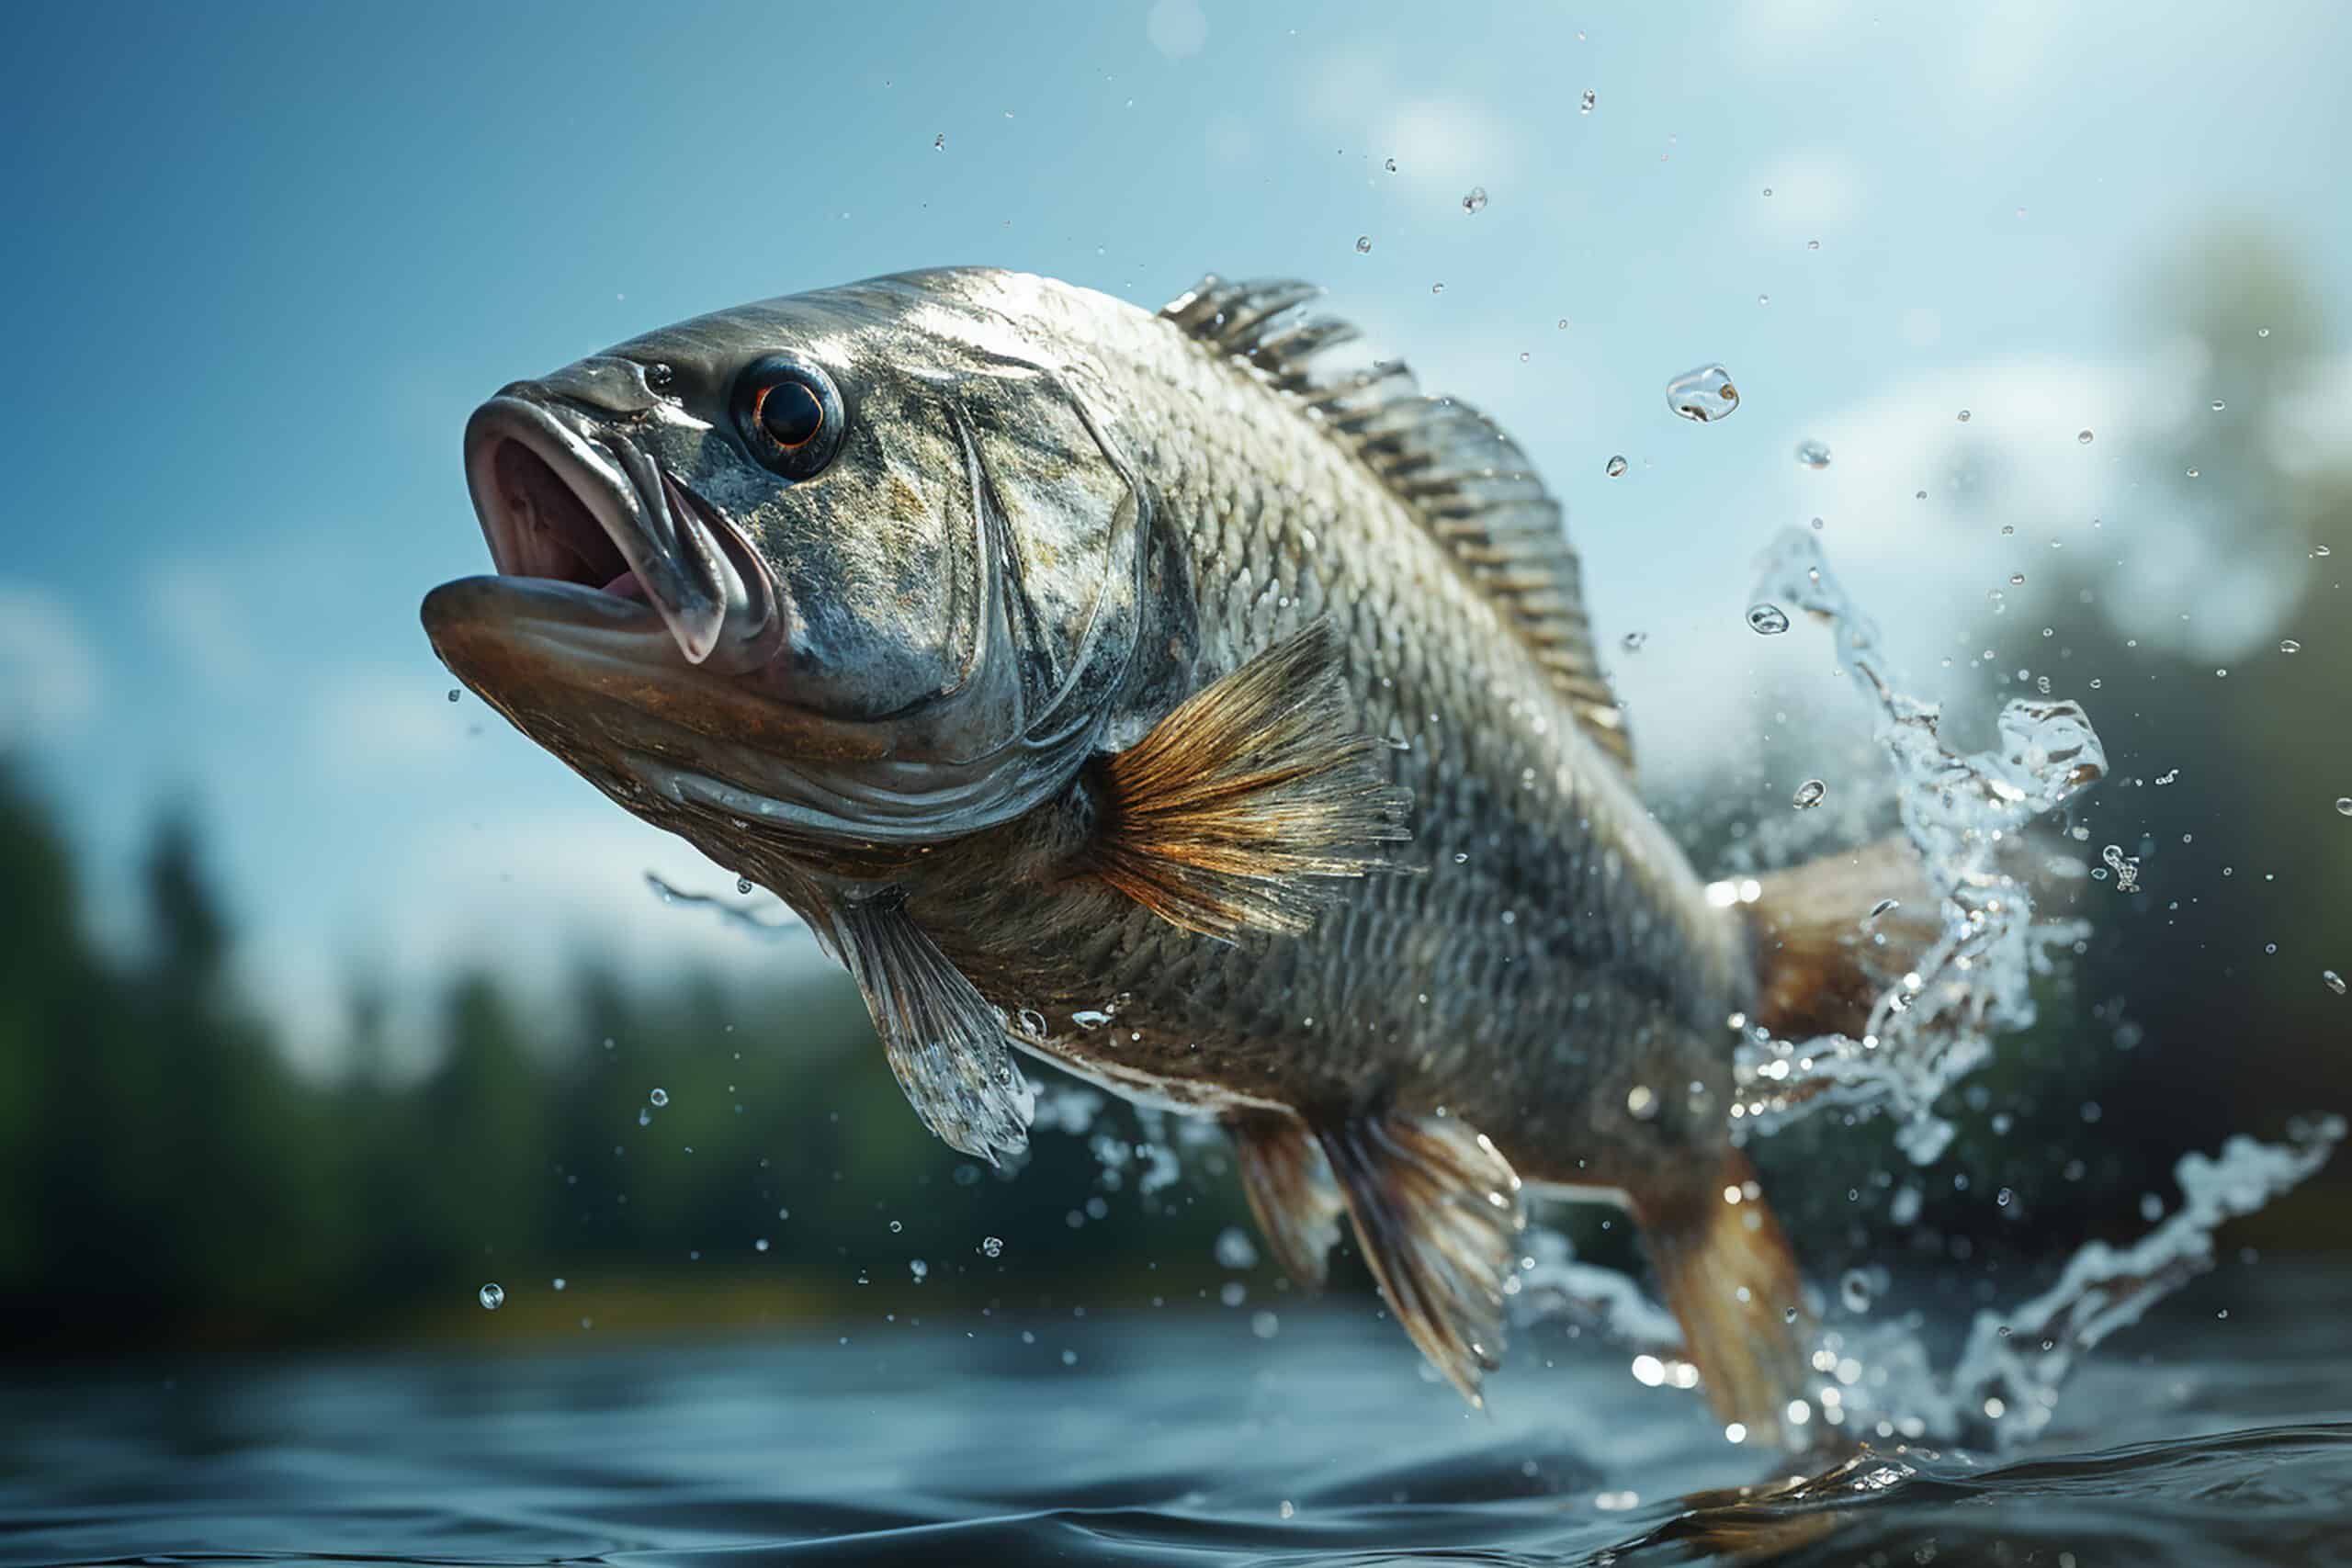 fanatic4fishing.com : Can you make a living bass fishing?